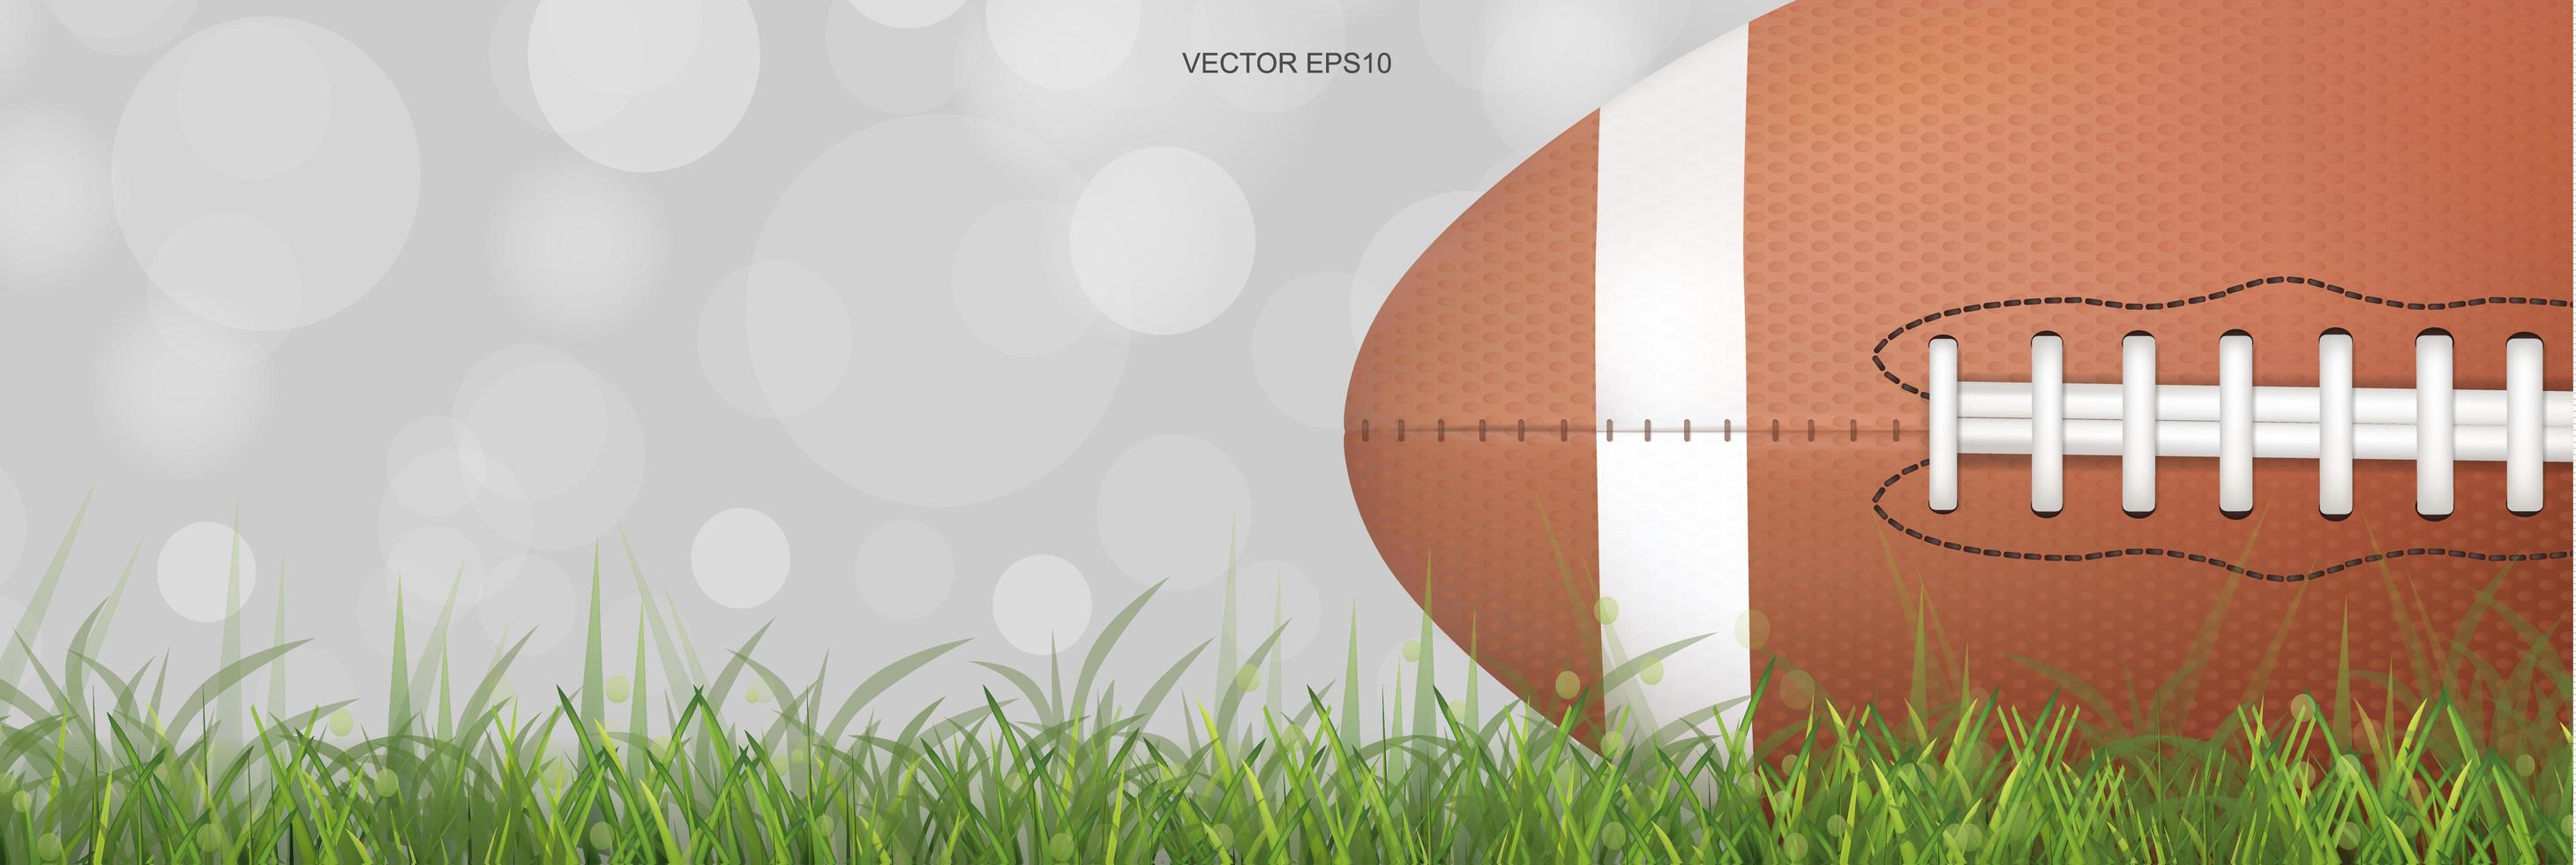 Horizontal football on green grass field vector